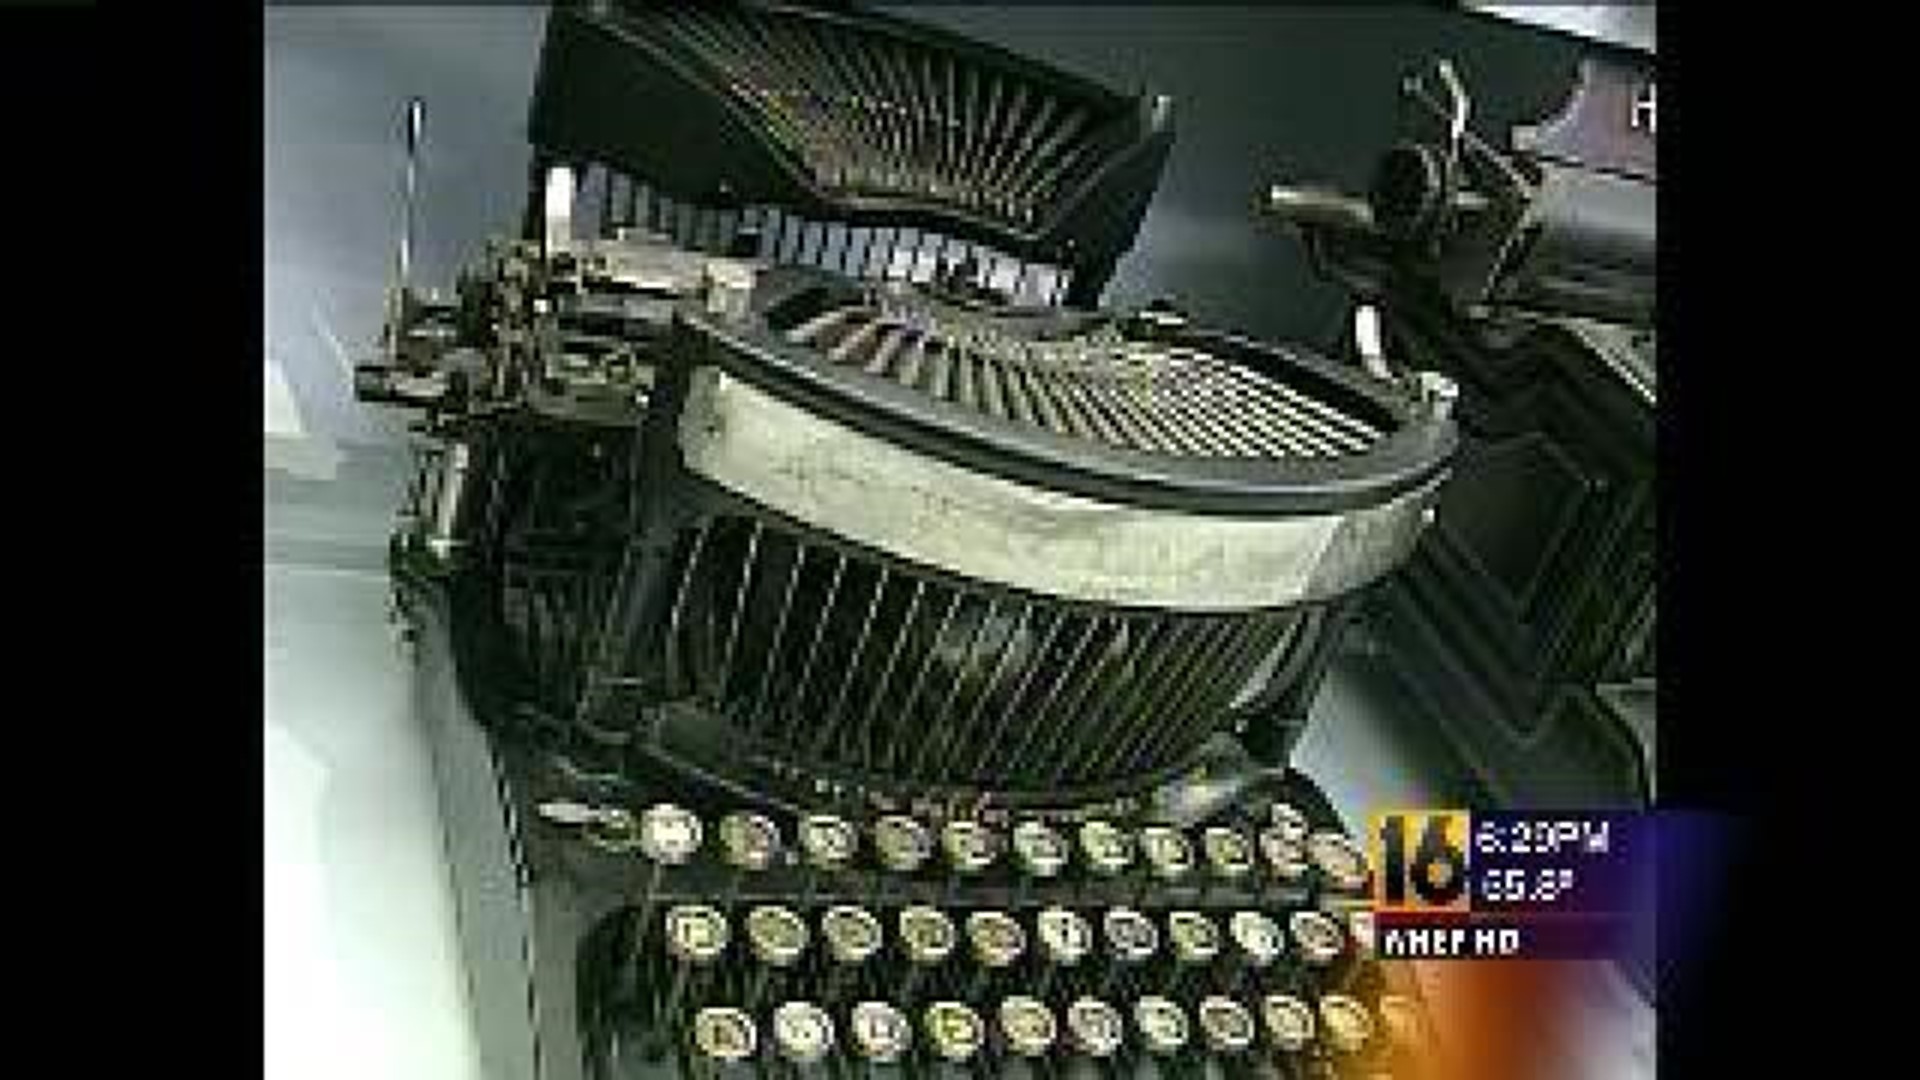 Typewriters On Display